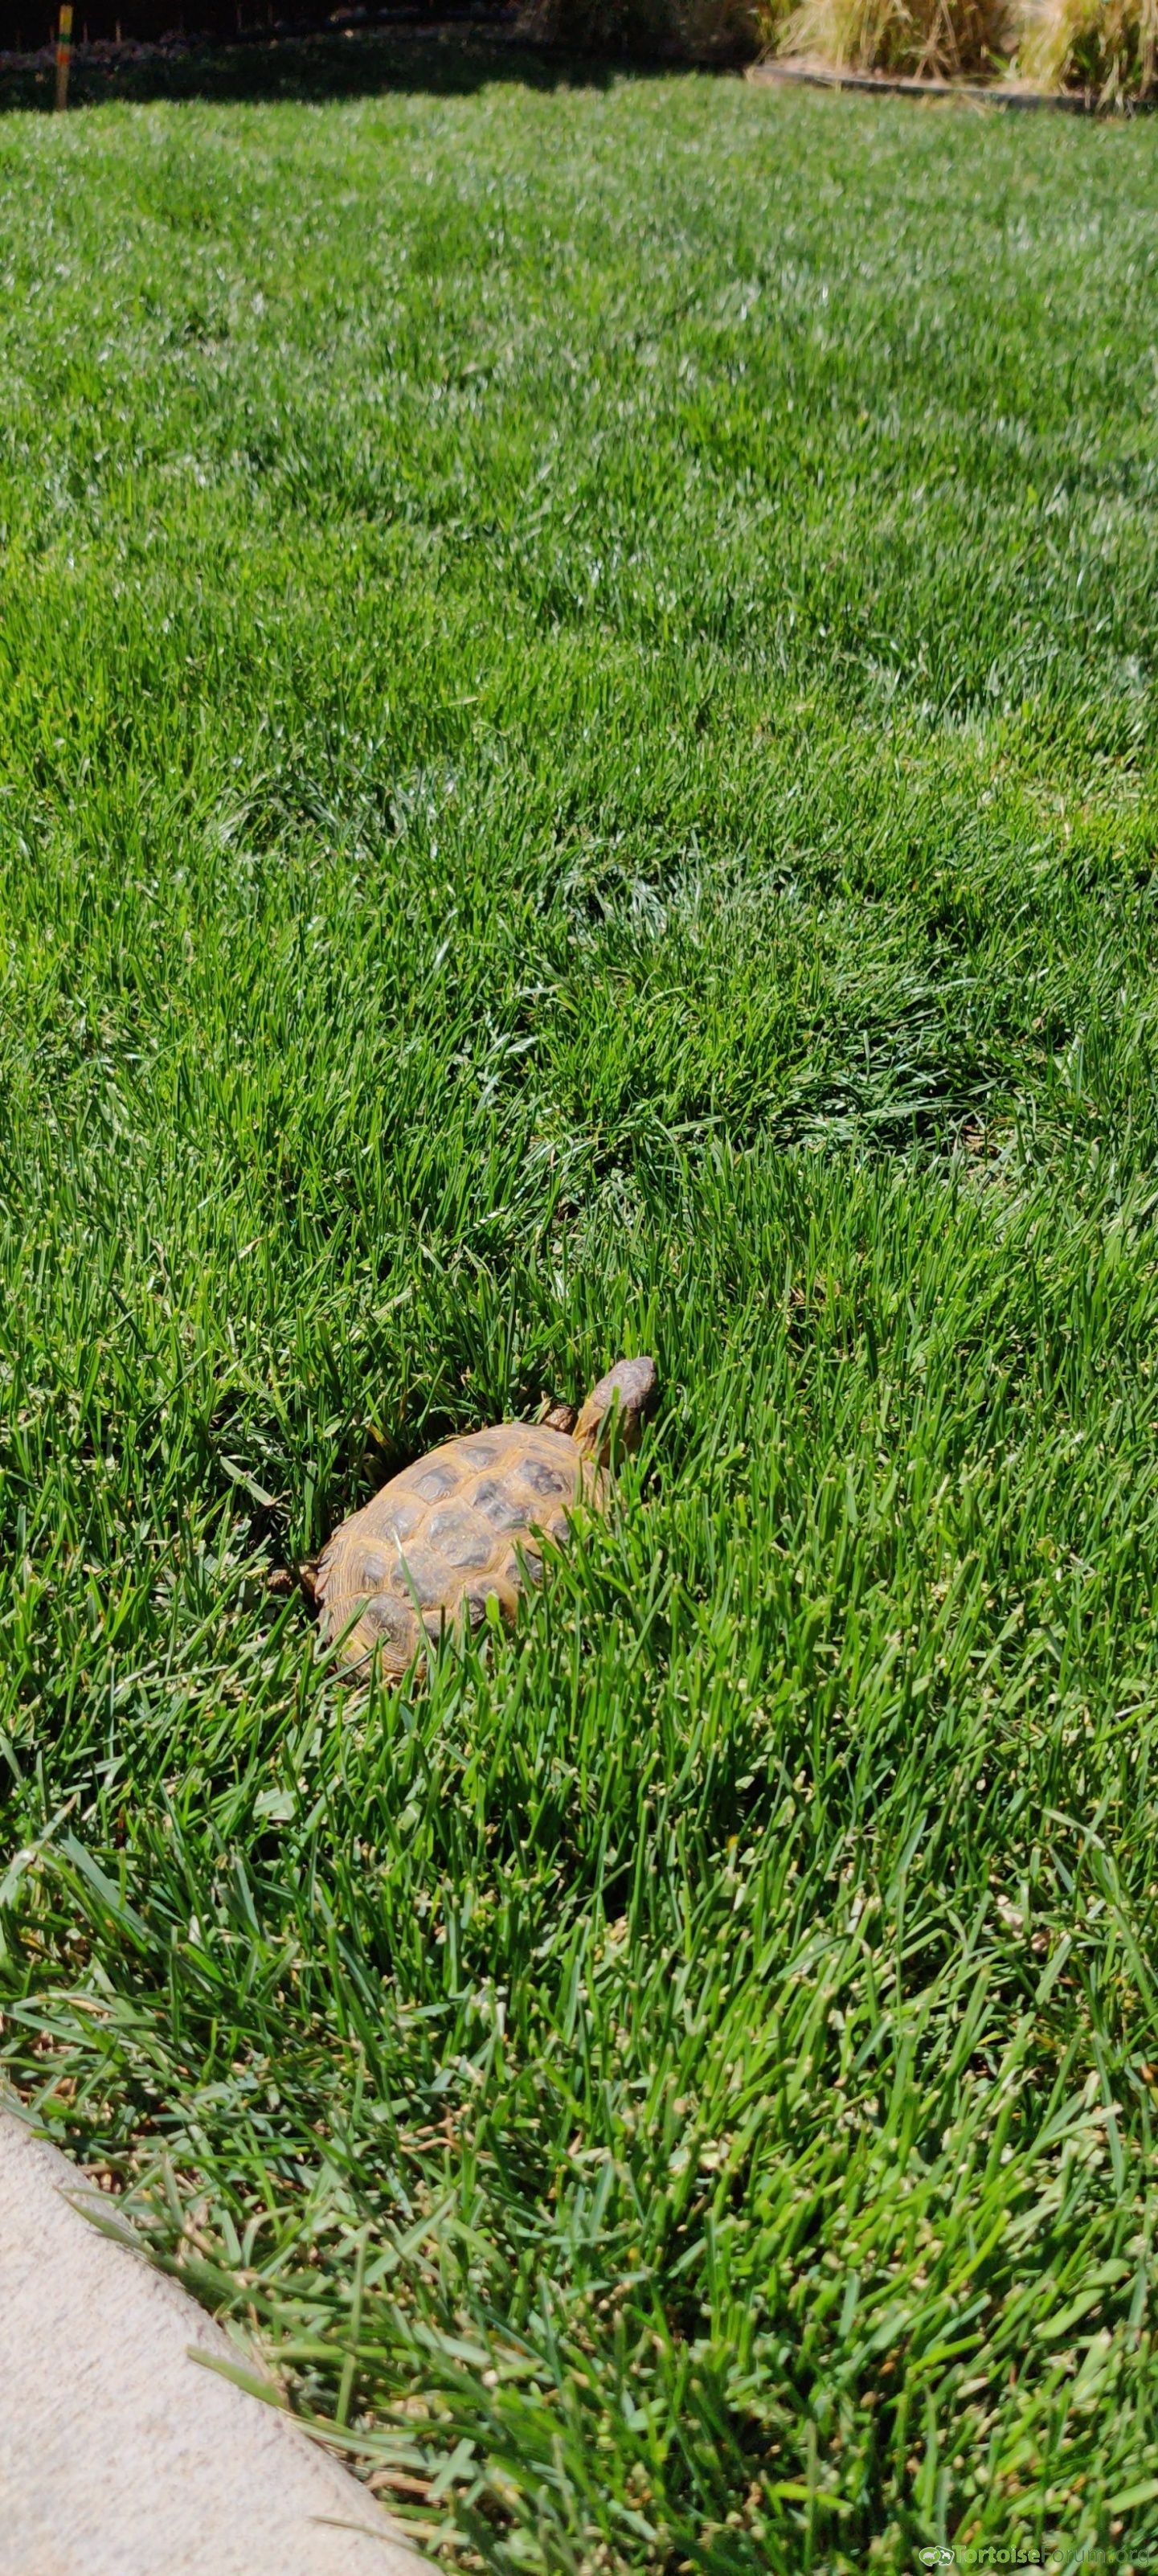 Russian tortoise grazing backyard